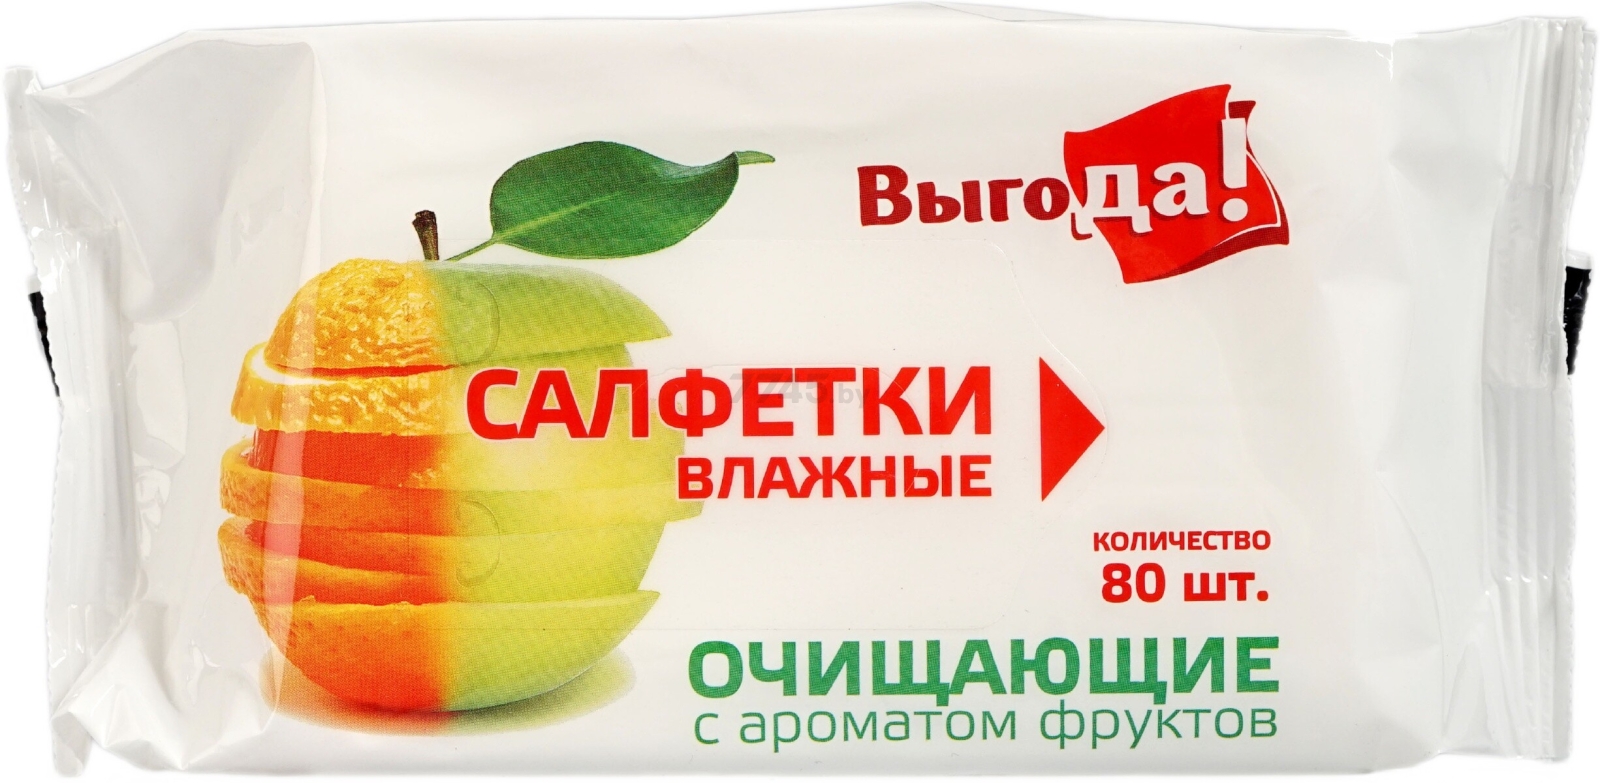 Салфетки влажные ВЫГОДА Освежающие с ароматом фруктов 80 штук (4690471122453)